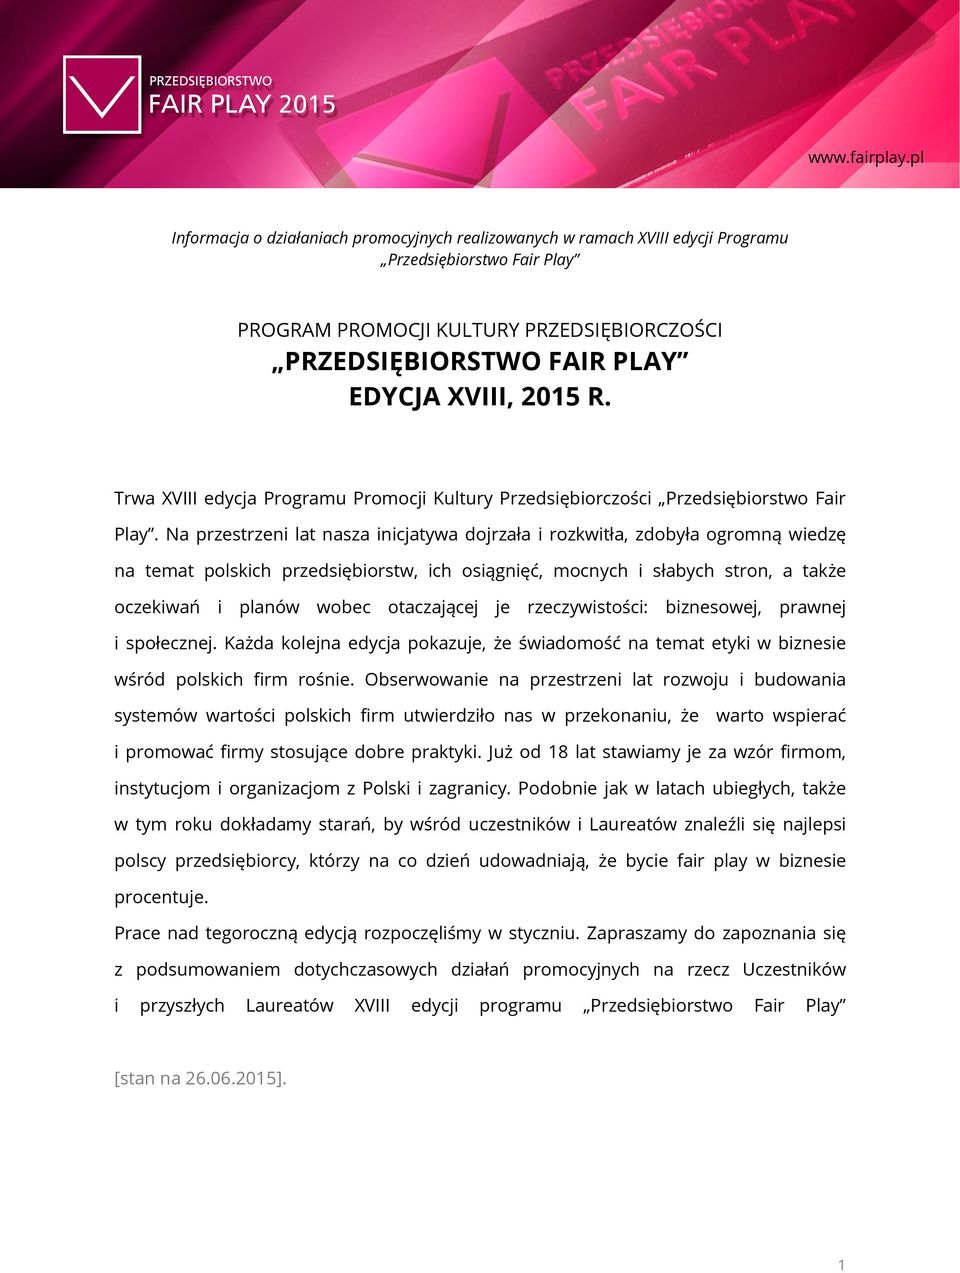 2015 R. Trwa XVIII edycja Programu Promocji Kultury Przedsiębiorczości Przedsiębiorstwo Fair Play.